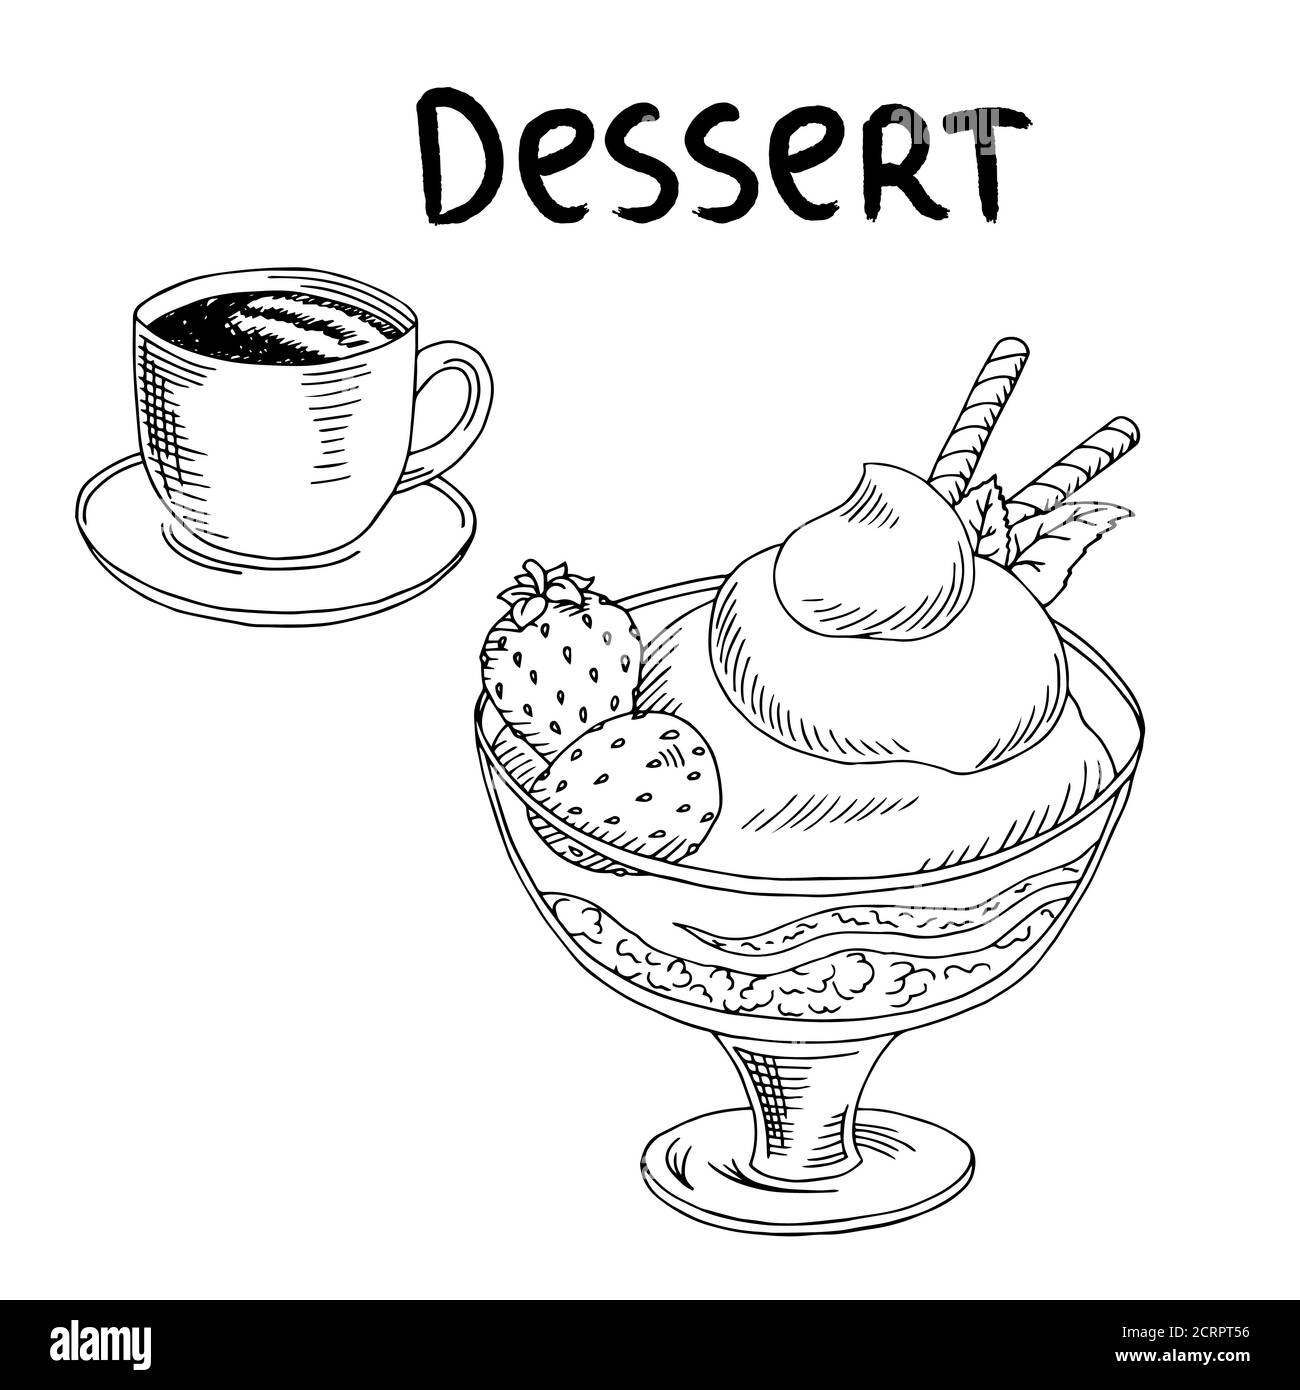 Dessert Erdbeere Eis Tasse Kaffee Lebensmittel Grafik Kunst schwarz Vektor der weißen Skizzendarstellung Stock Vektor